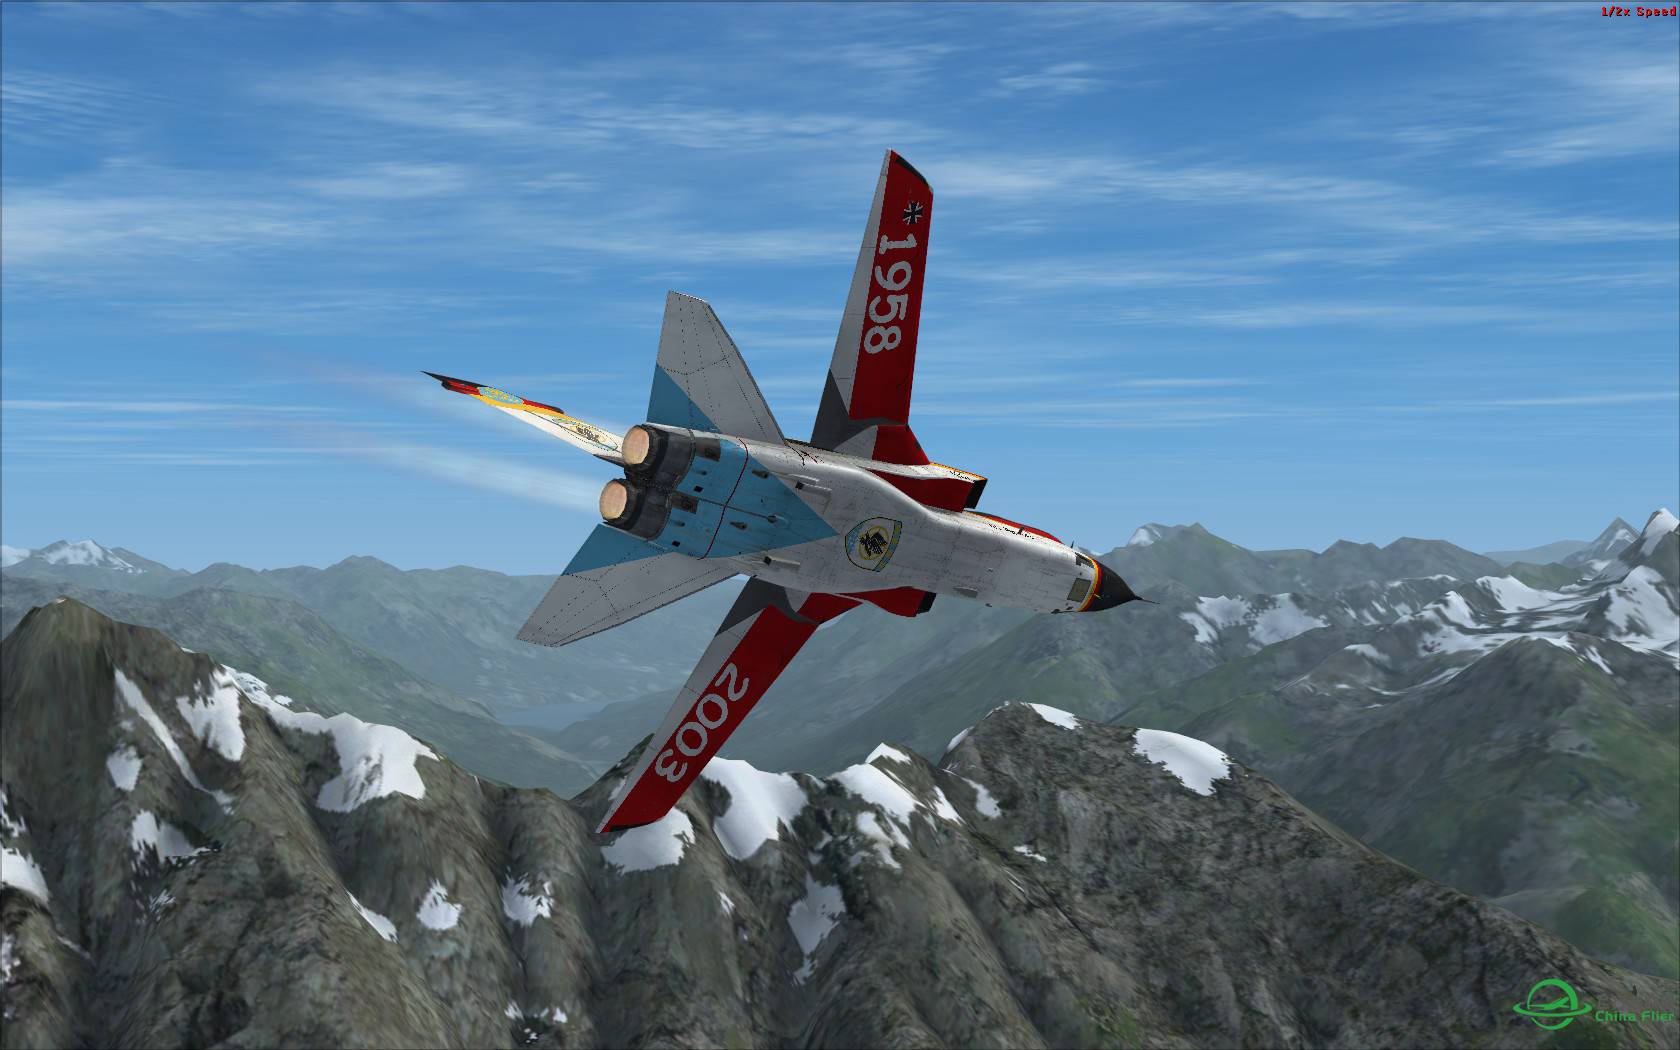 冰与火之歌:最新Just Flight狂风战机火红涂装与蓝色北美冰...-777 